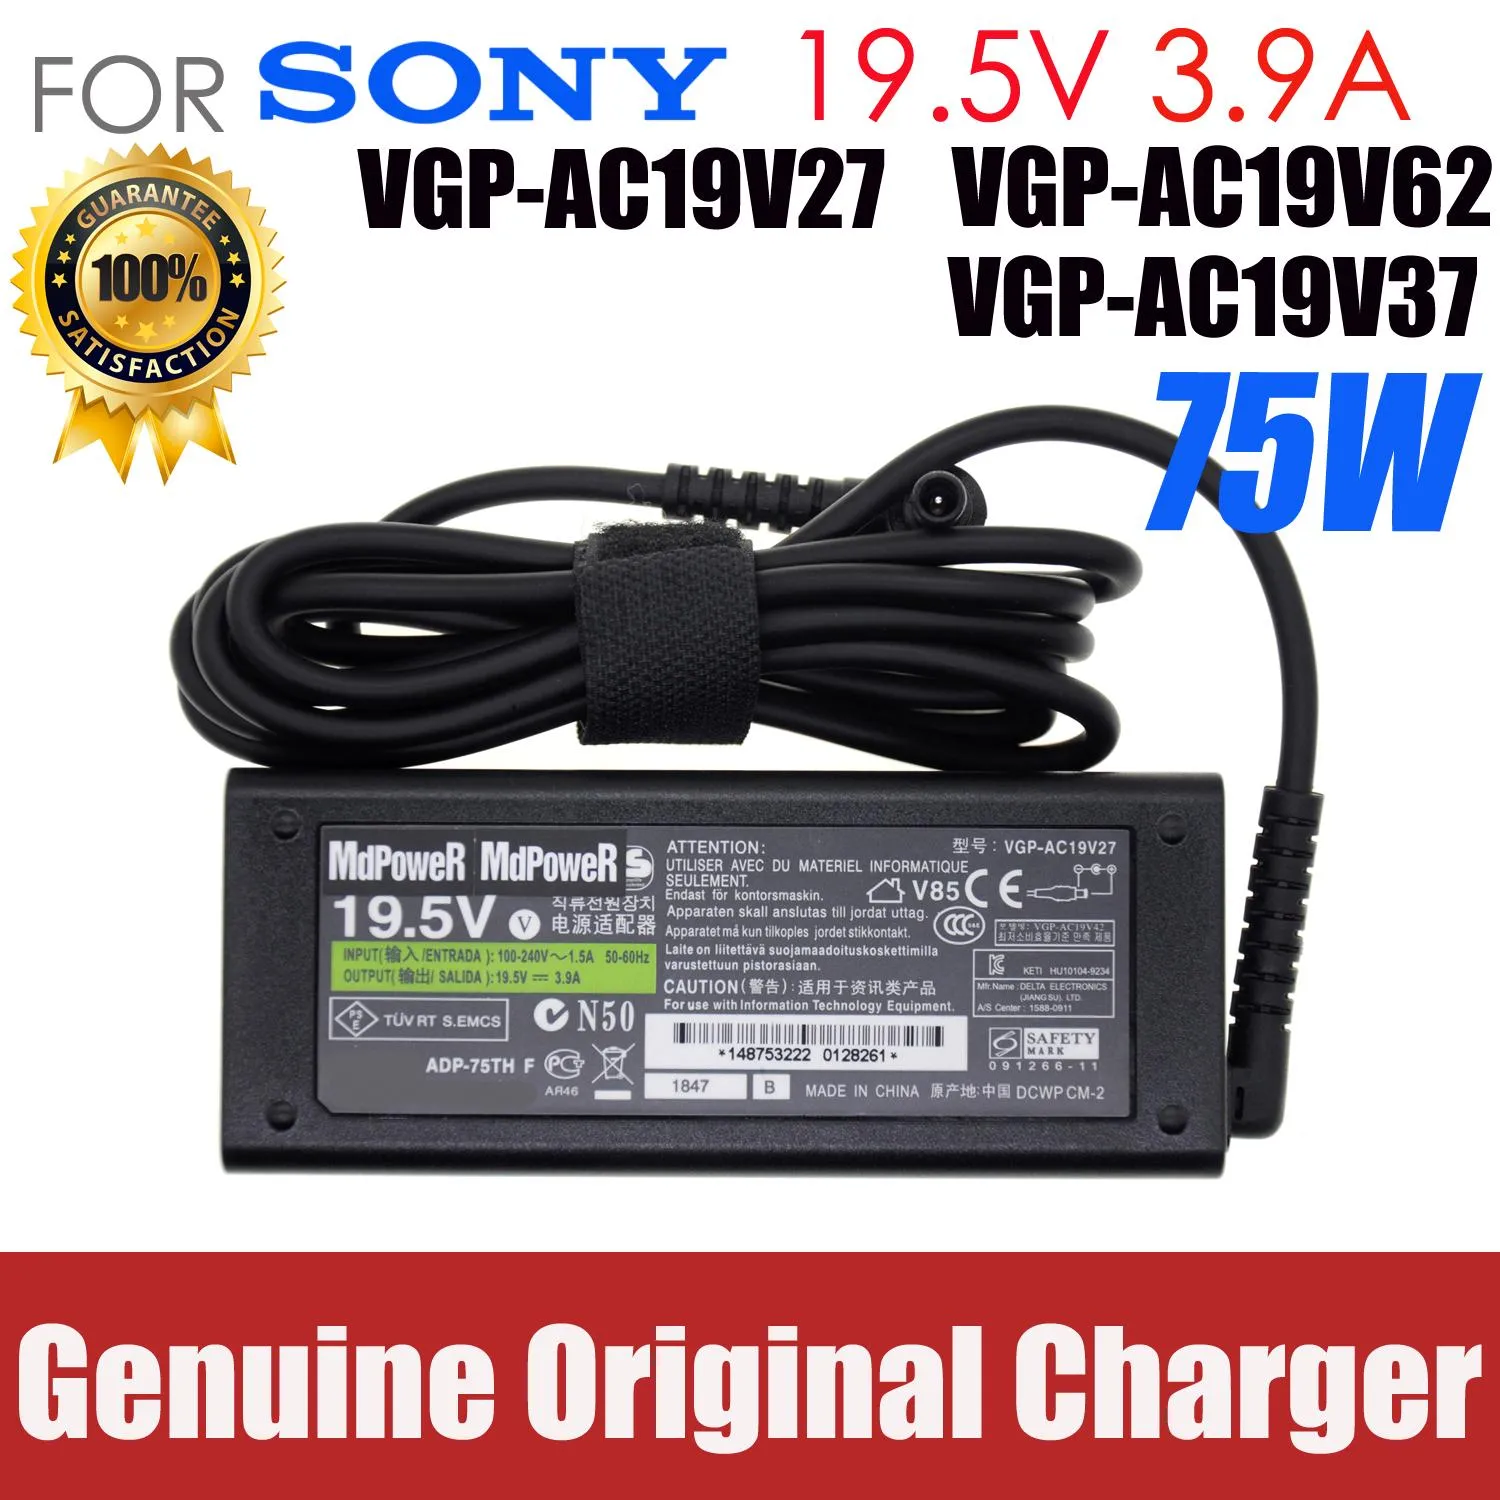 Adapter Original för Sony VAIO 19.5V 3.9A 75W VGPAC19V27 / V62 / V37 / V33 / V20 / V19 LAPPOP Supply Power AC Adapter Charger